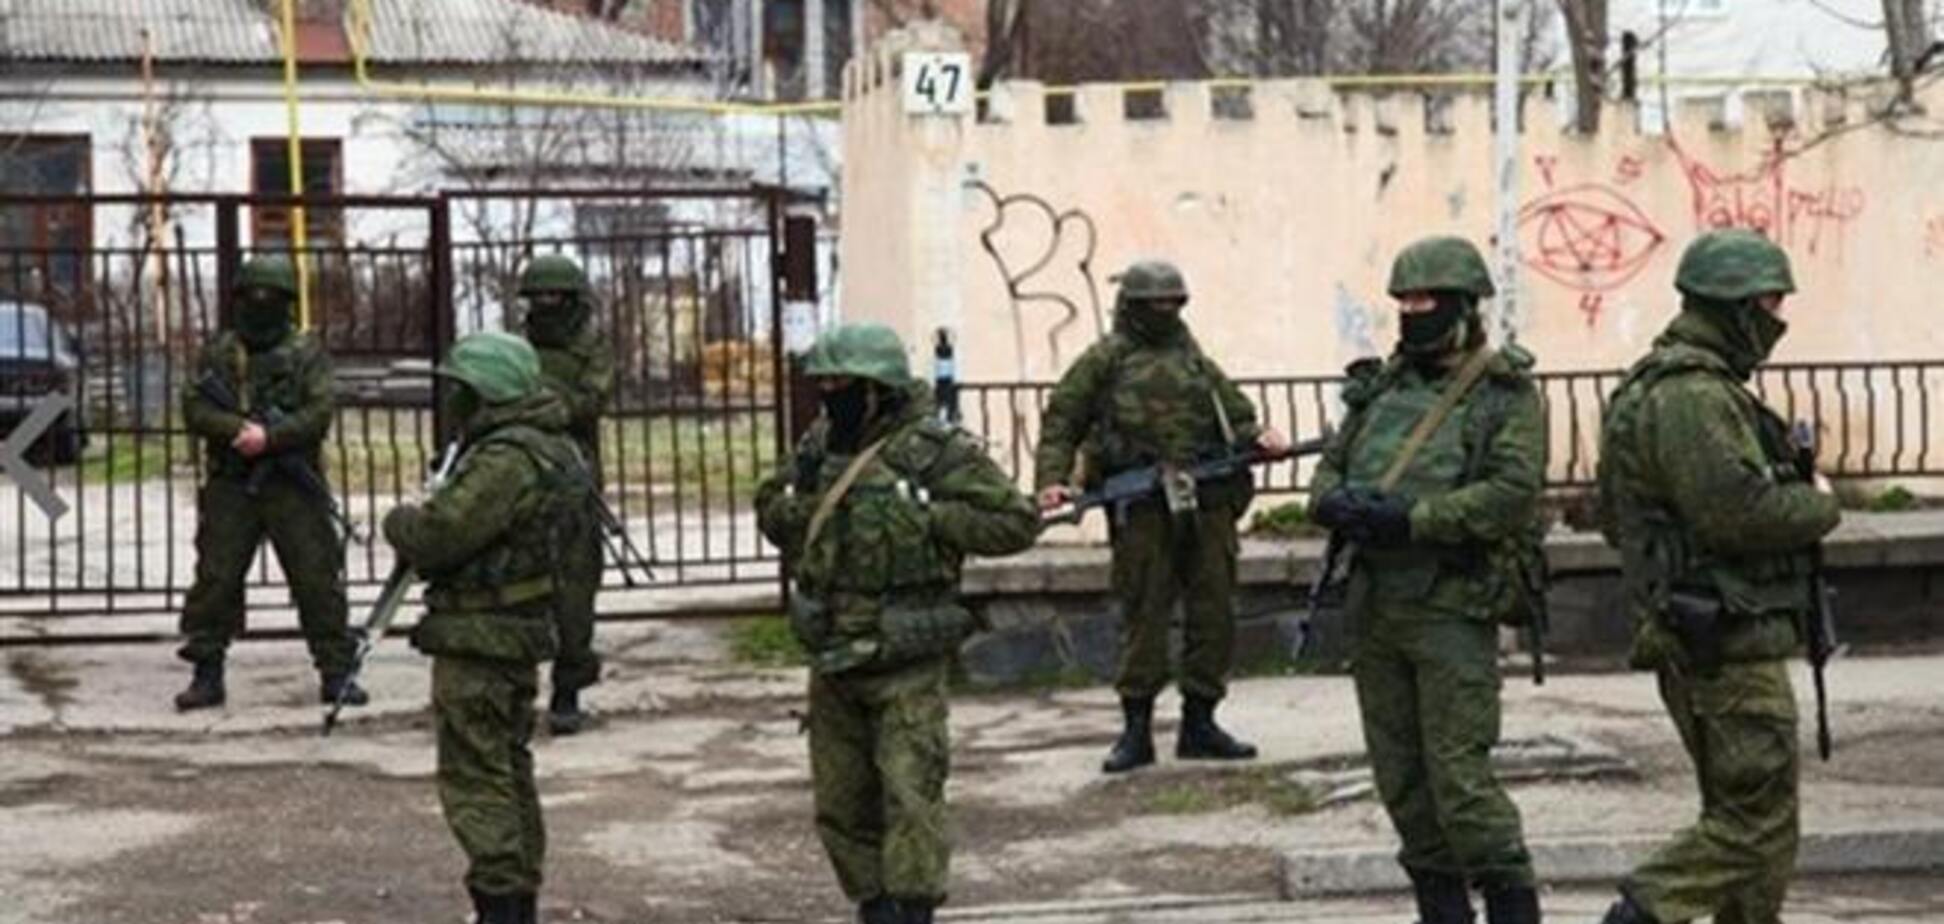 Штаб ВМС України в Севастополі раніше заблокований